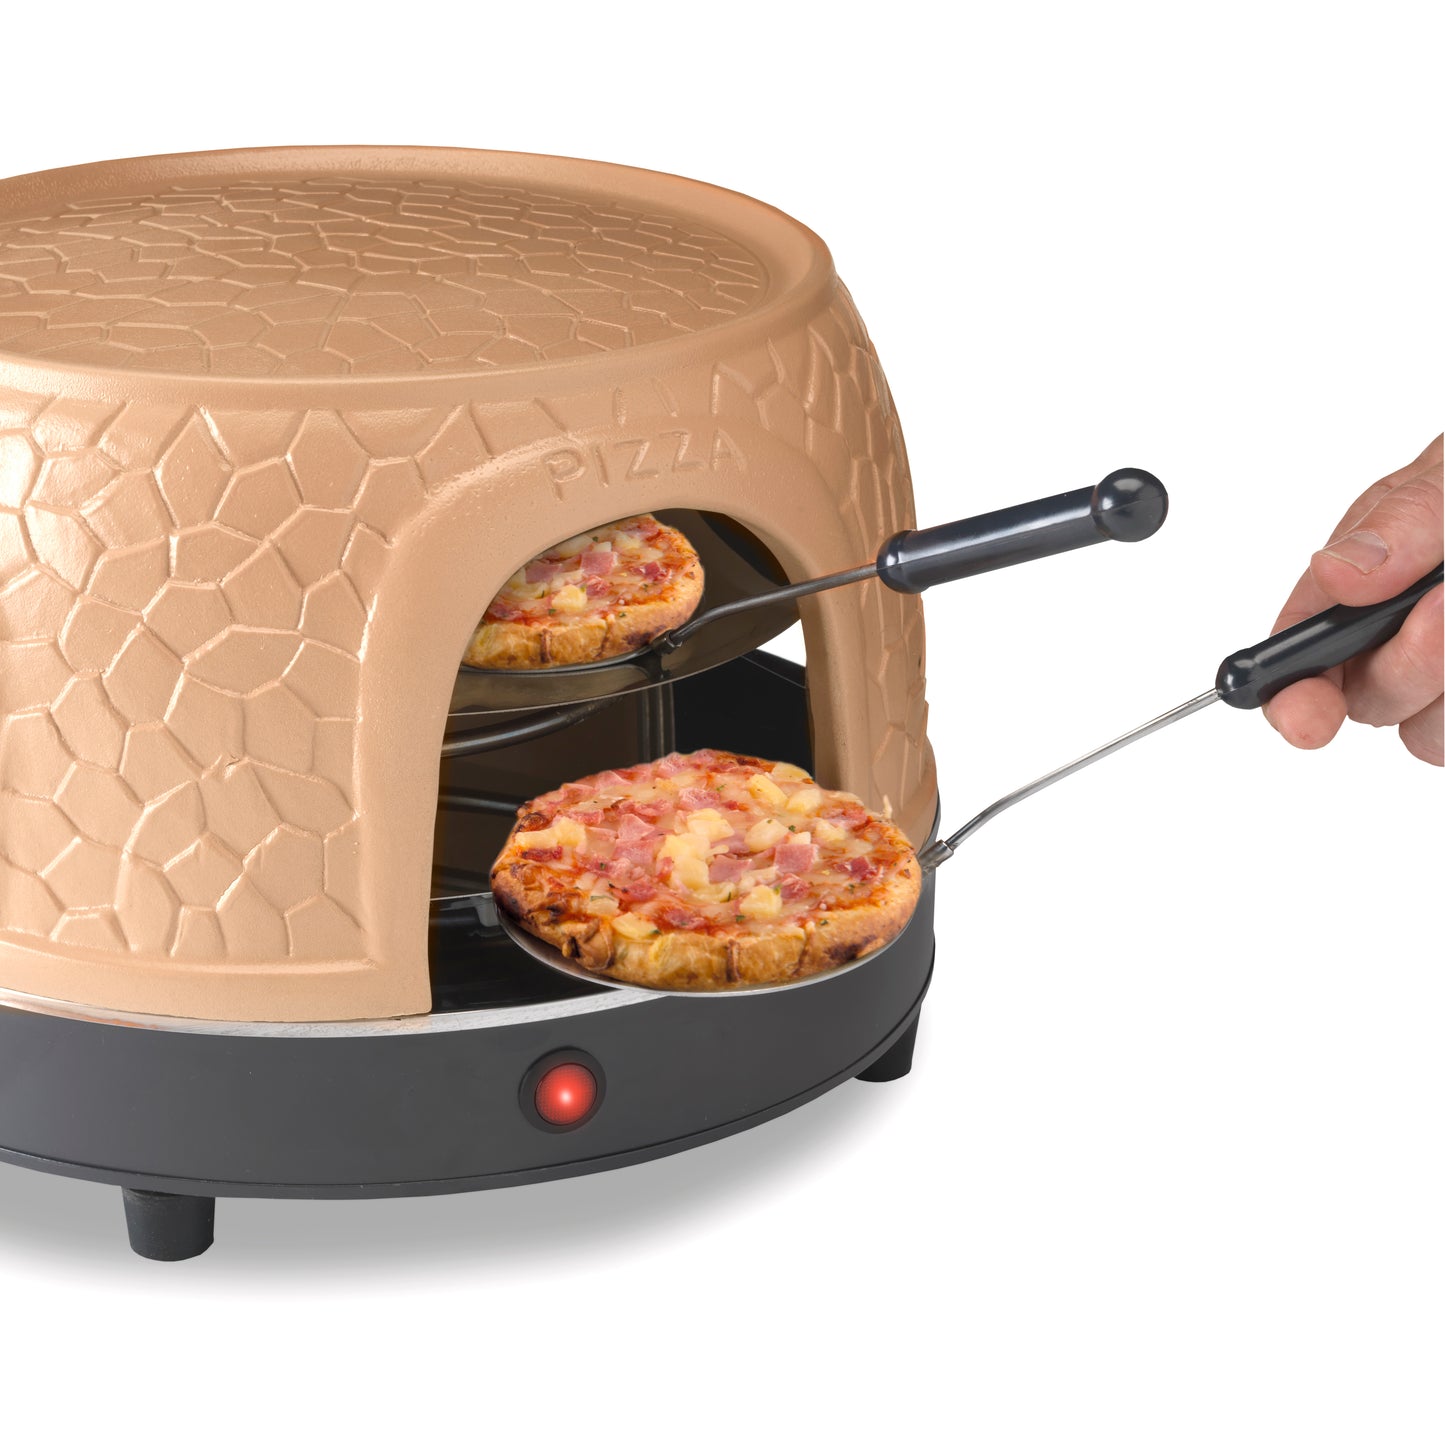 Gastronoma 18310018 - Pizza oven voor 8 personen - Inclusief bakspatels, bakplaat en pizzavorm - Keramiek/Grijs